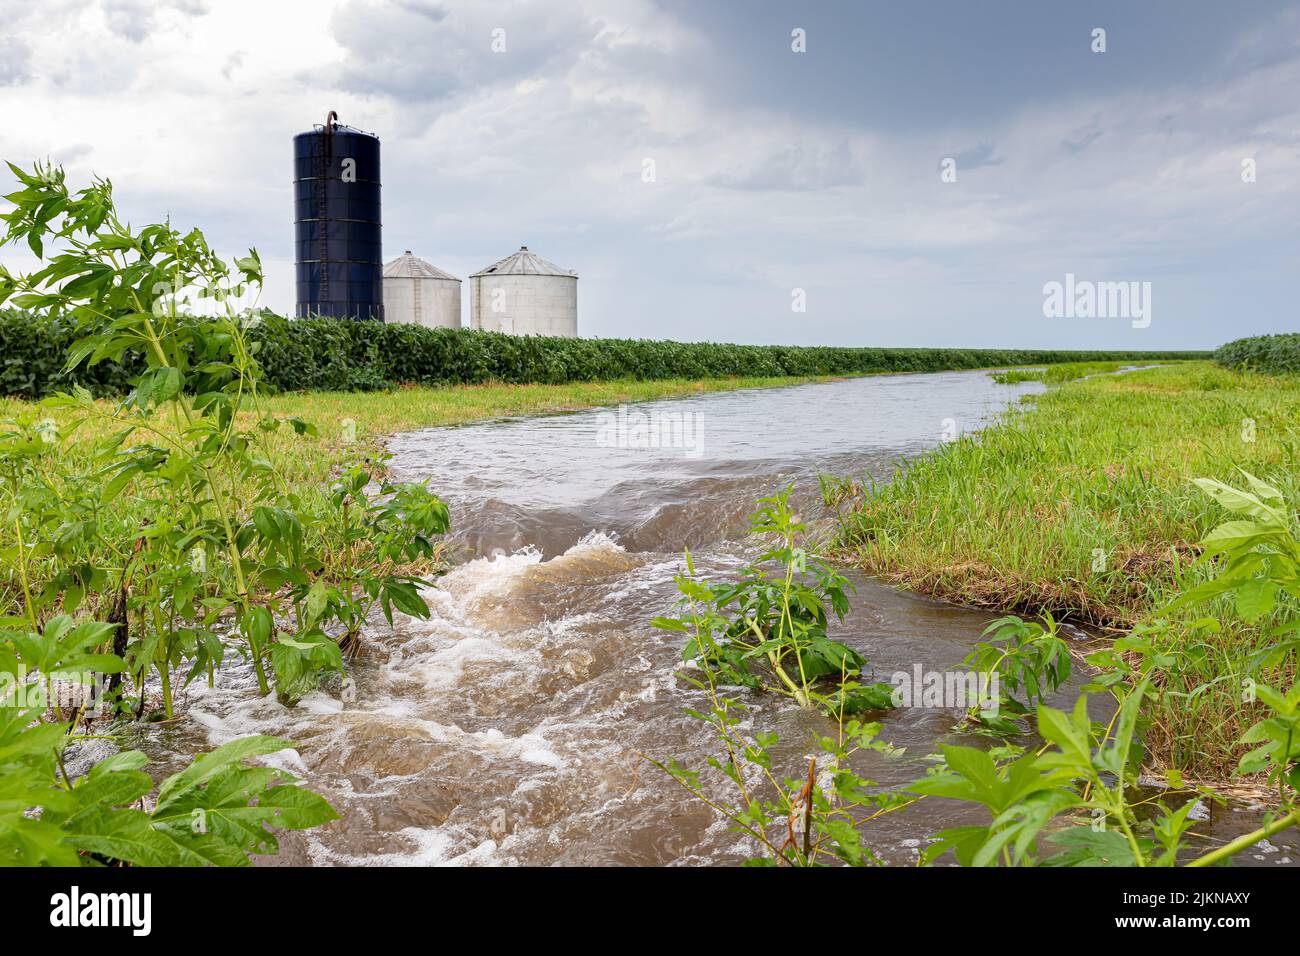 Inundación de agua de lluvia que fluye a través de la vía fluvial del campo agrícola. Concepto de agricultura, cambio climático y control de erosión. Foto de stock